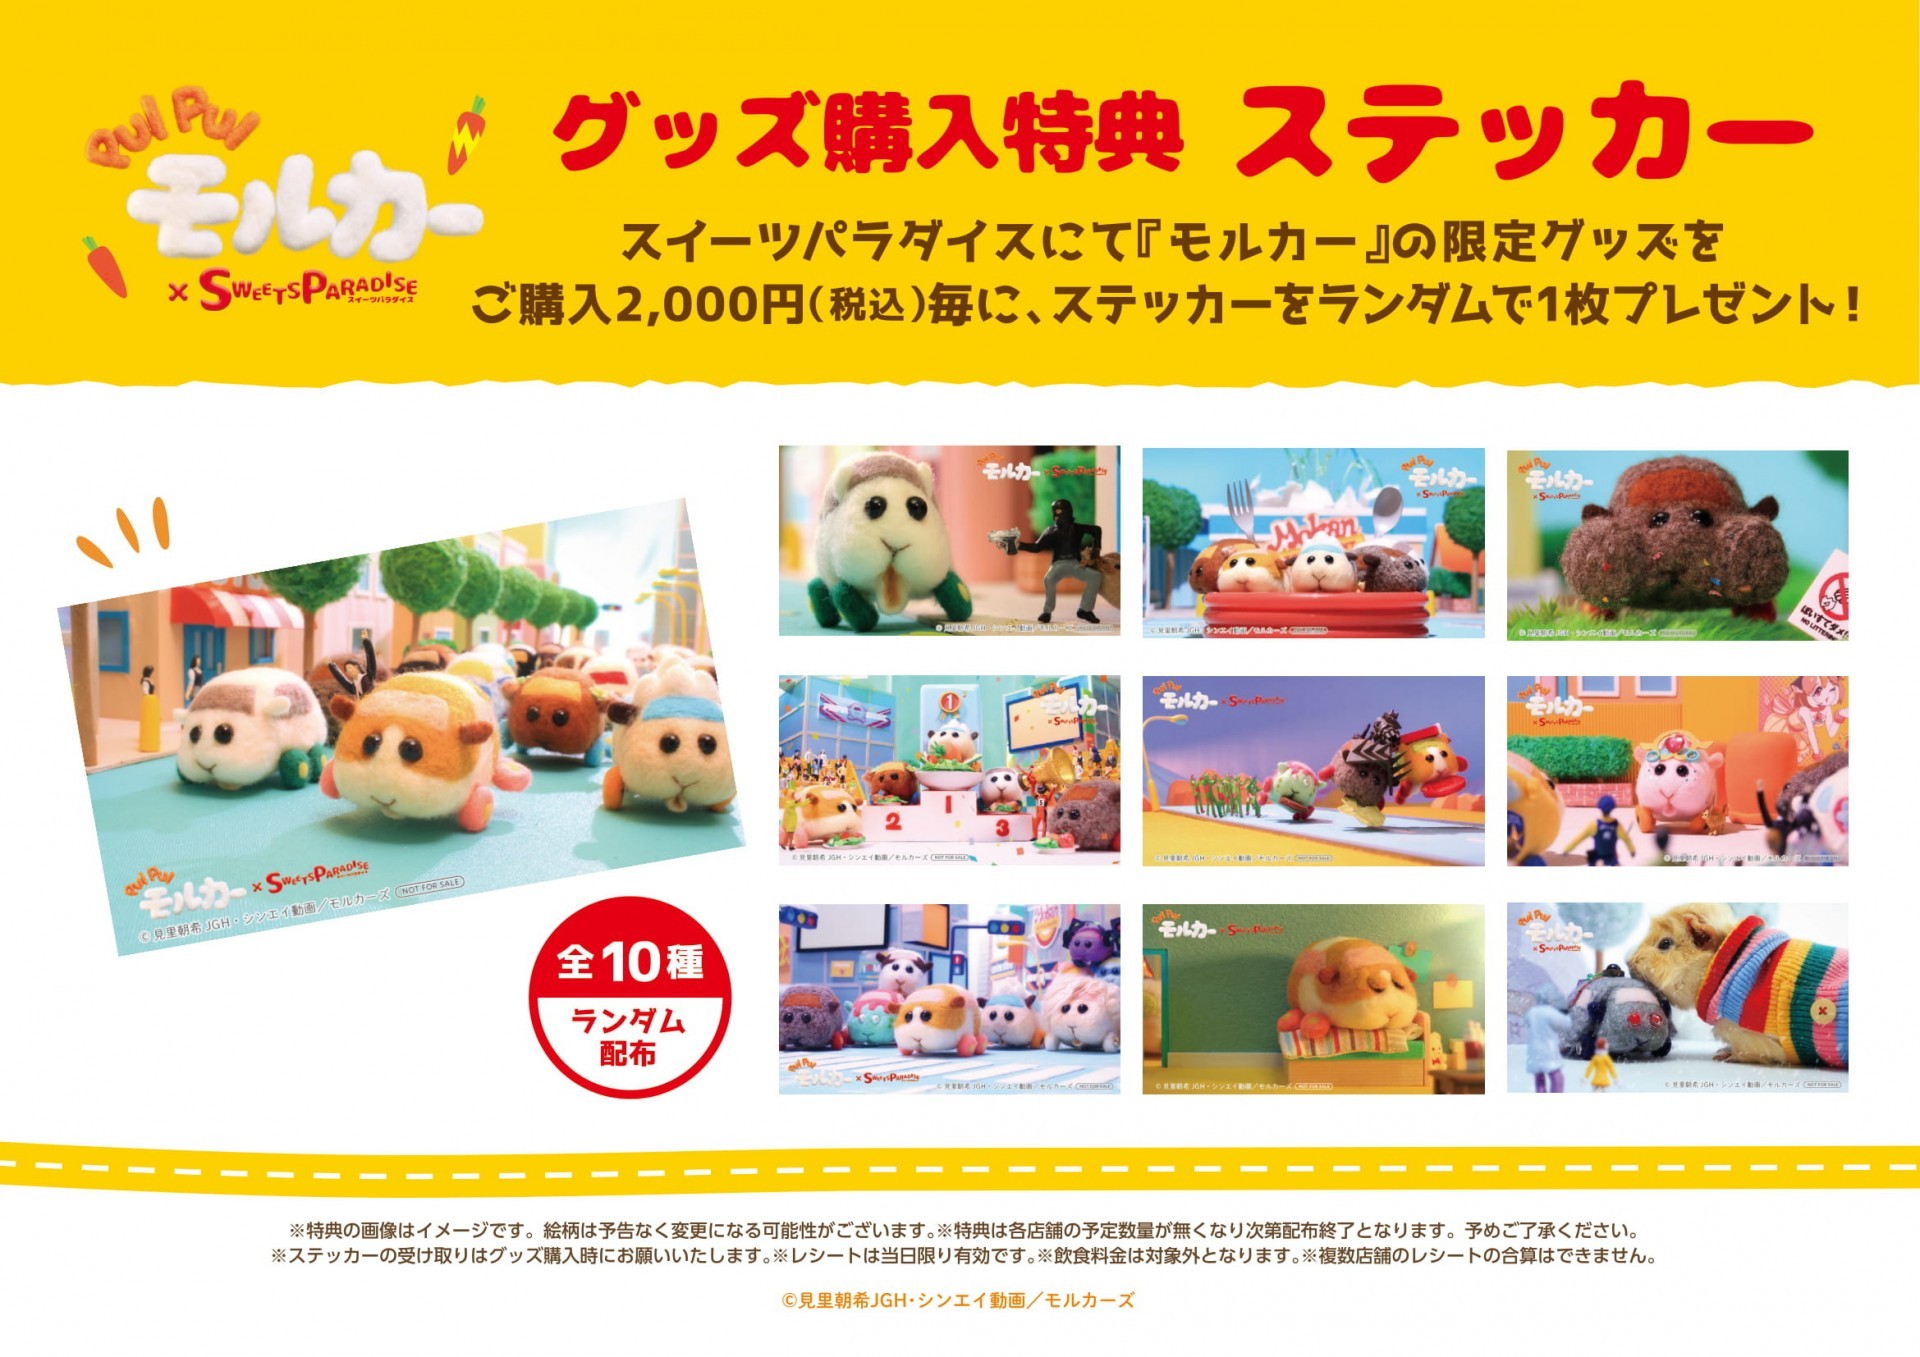 《天竺鼠车车》与日本甜点连锁店合作推出期间限定餐点与周边